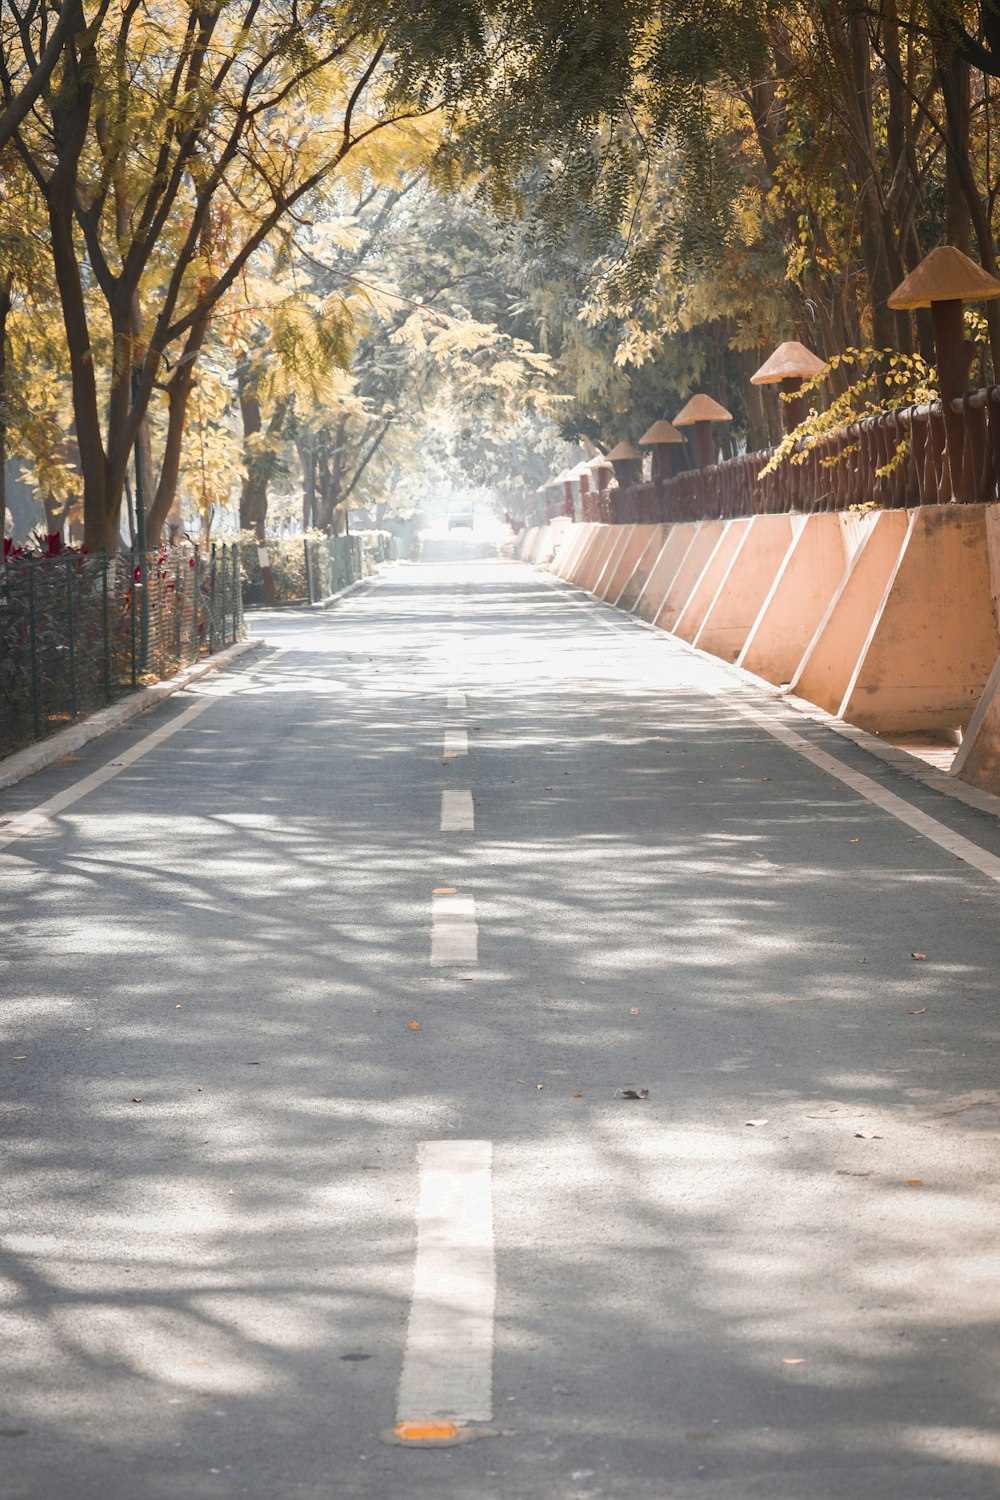 日中の茶色の木の柵と木々の間の灰色のコンクリートの通路